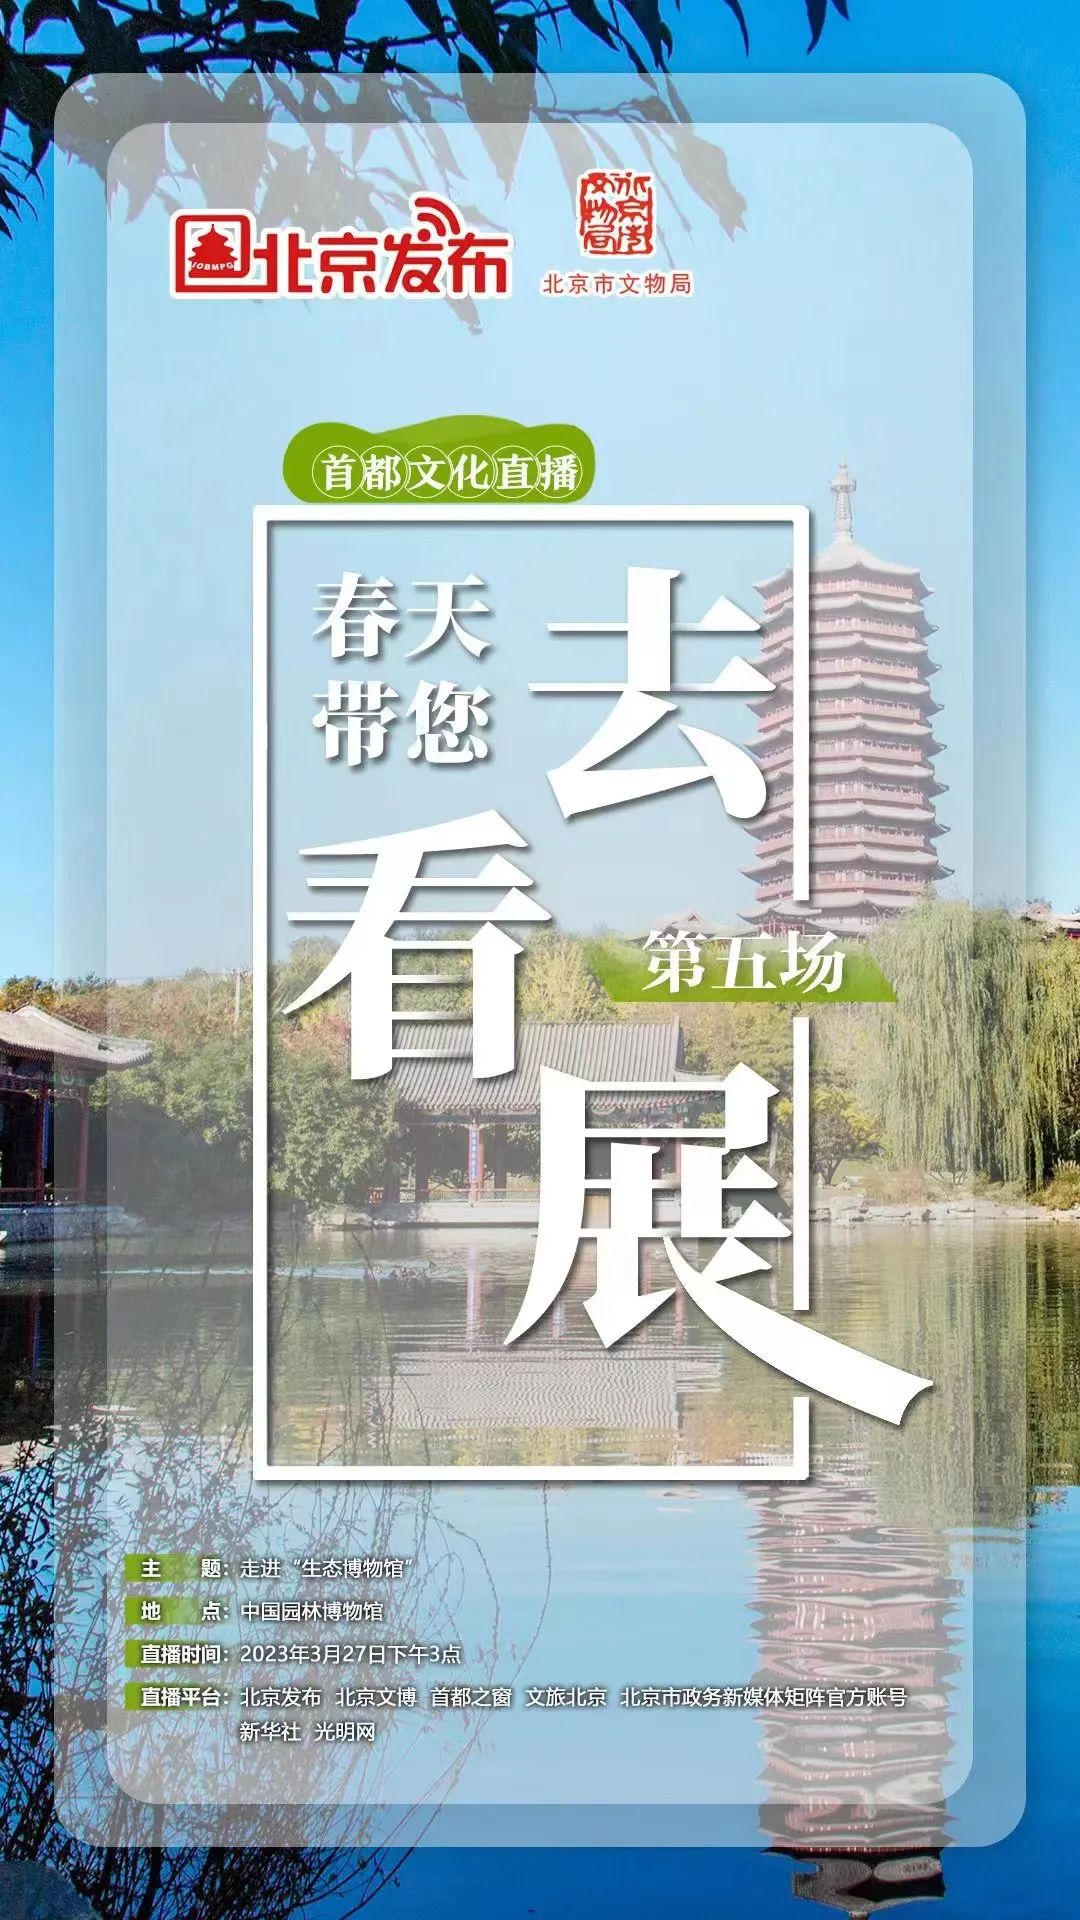 直播预告丨首都文化直播之“春天带您去看展”系列第五场明日开播 走进中国园林博物馆